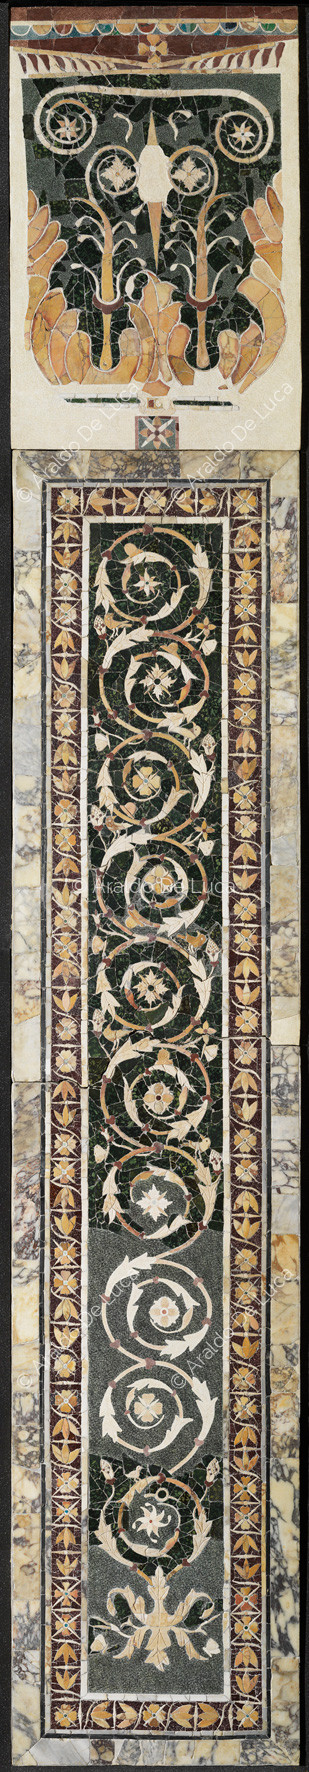 Pilastra con la rama floral y borde de flores de loto - Opus Sectile de Porta Marina, particular